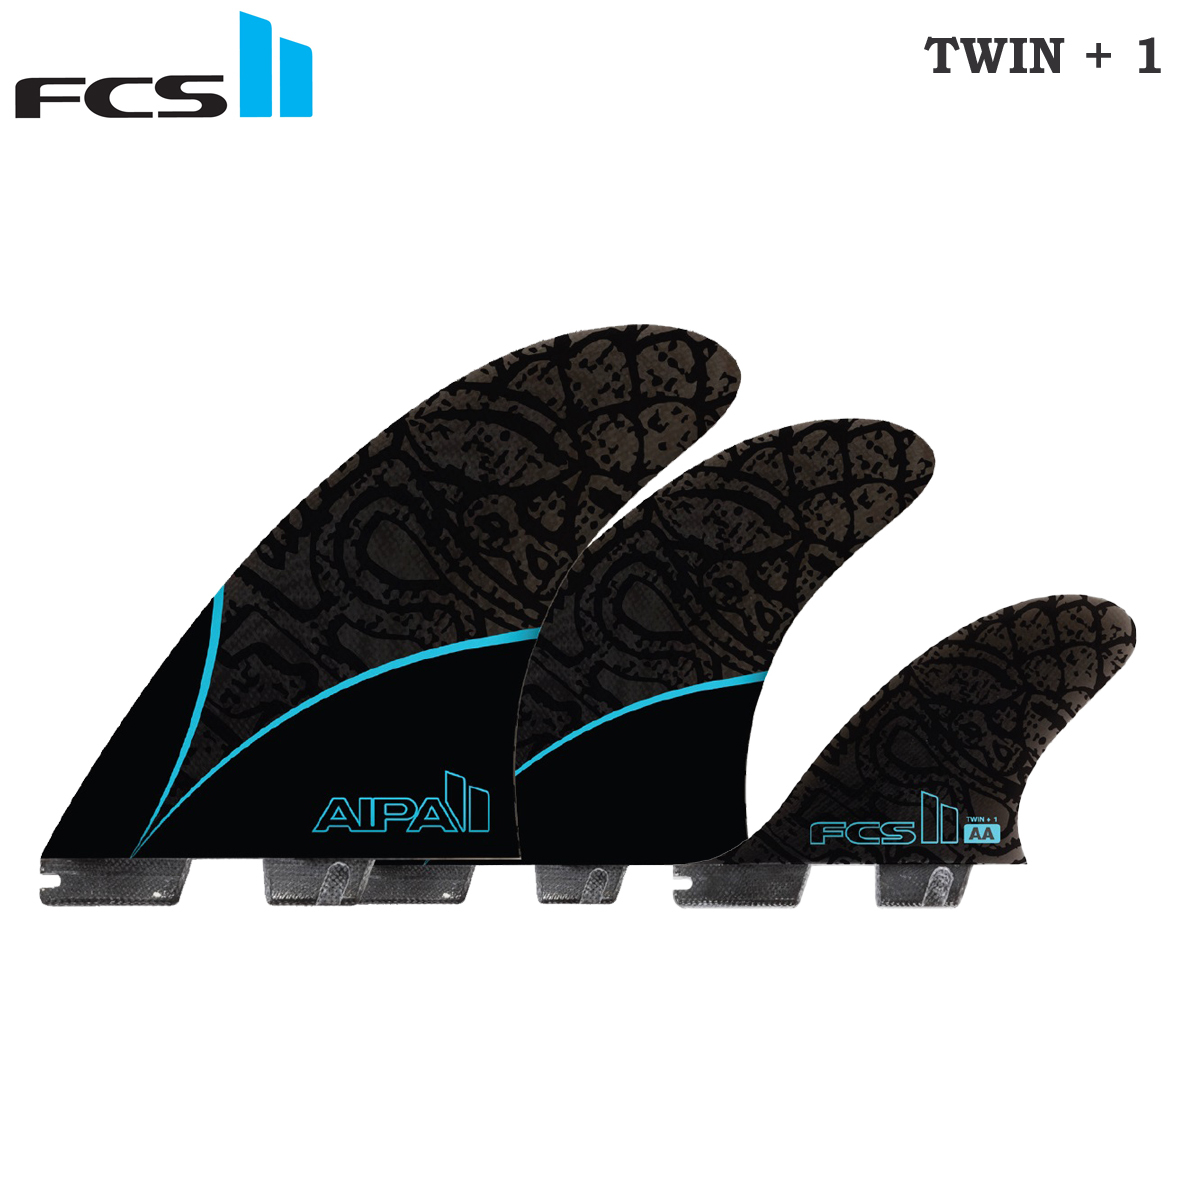 FCS2 フィン エフシーエス2 AIPA TWIN+STABILISER FIN ツインスタビ フィン ショートボード用フィン 3本セット アイパサーフボード Smoke/Black/BLUE